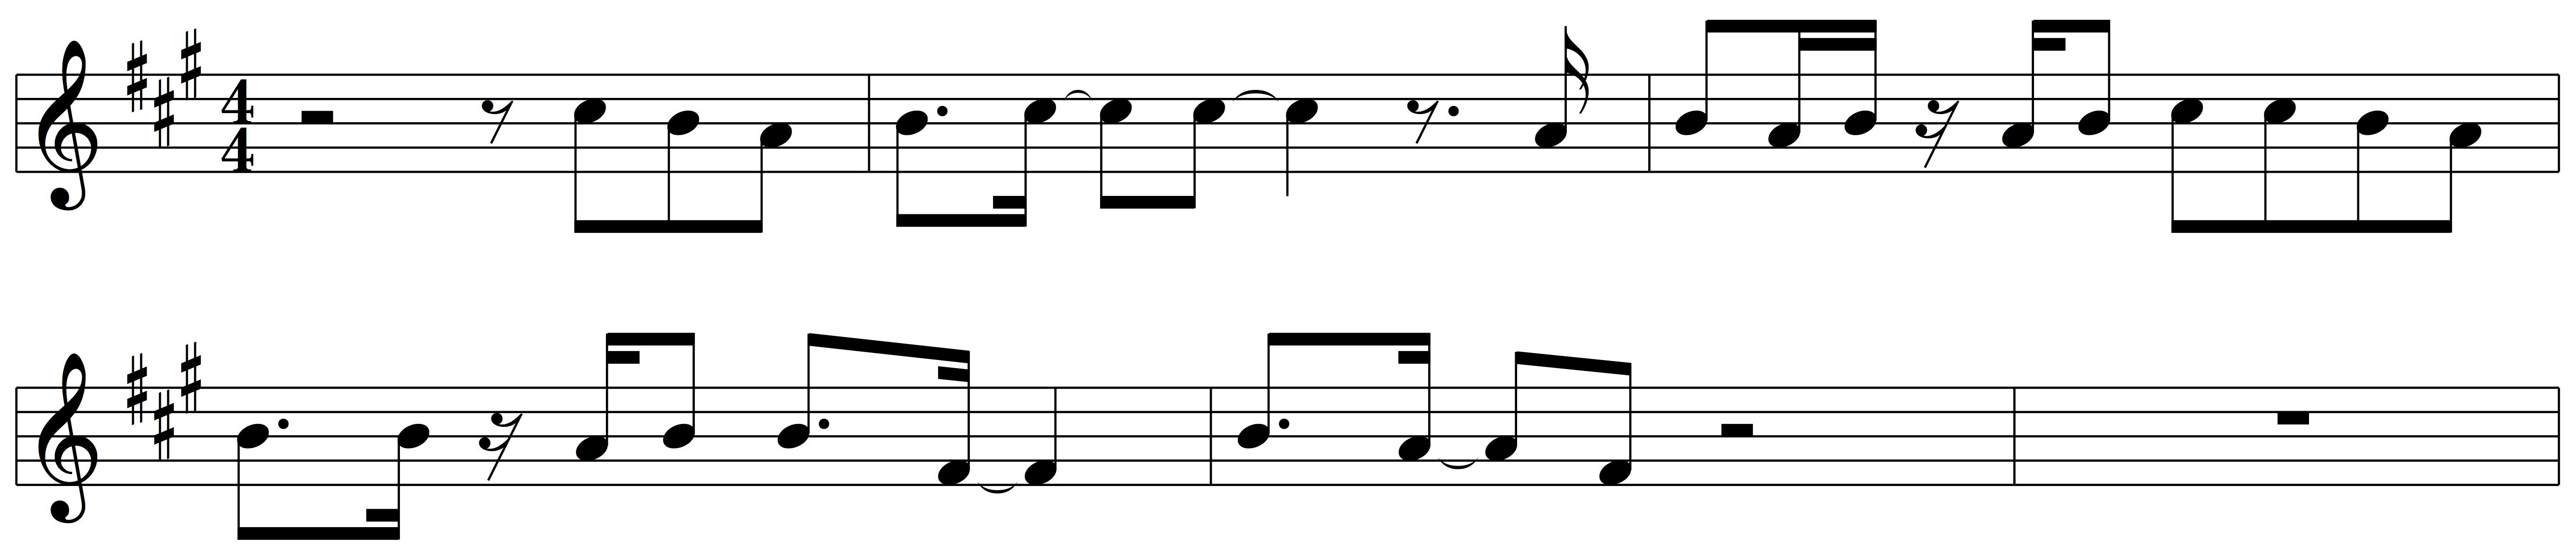 pentatonic-scale-drake-sheet-music